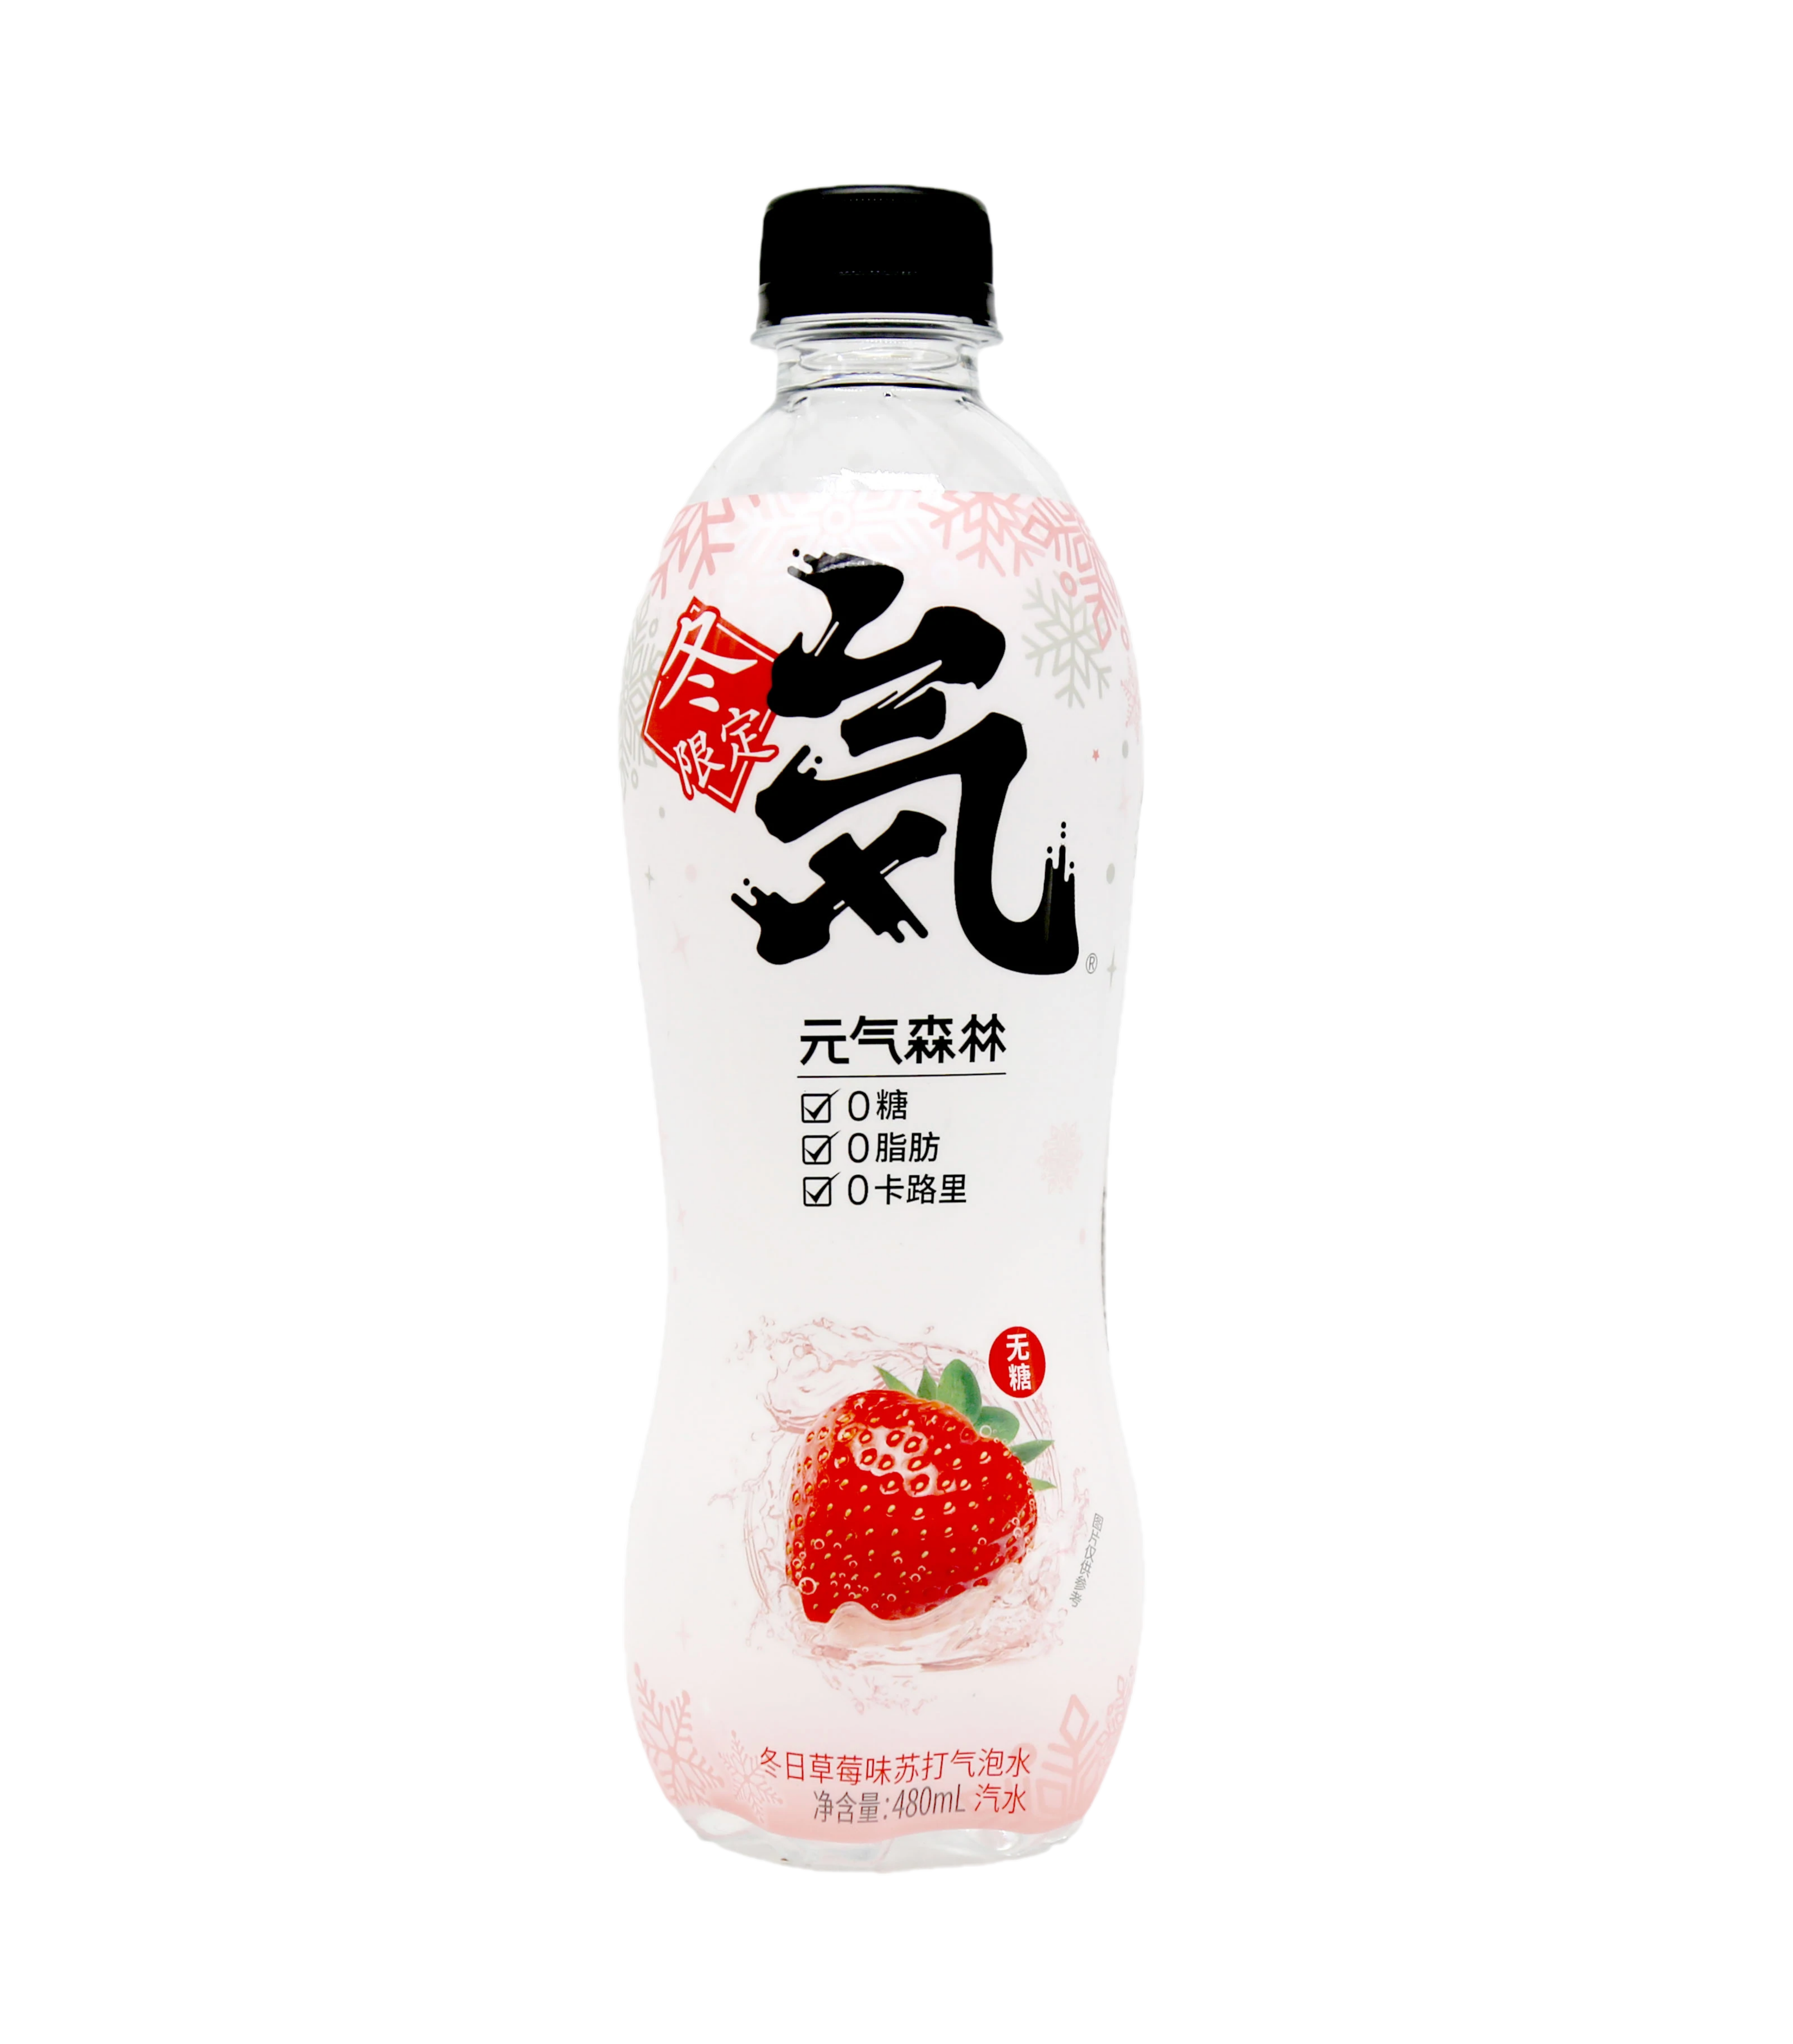 Genki Forest  Sugar-free sparkling water winter strawberry flavor